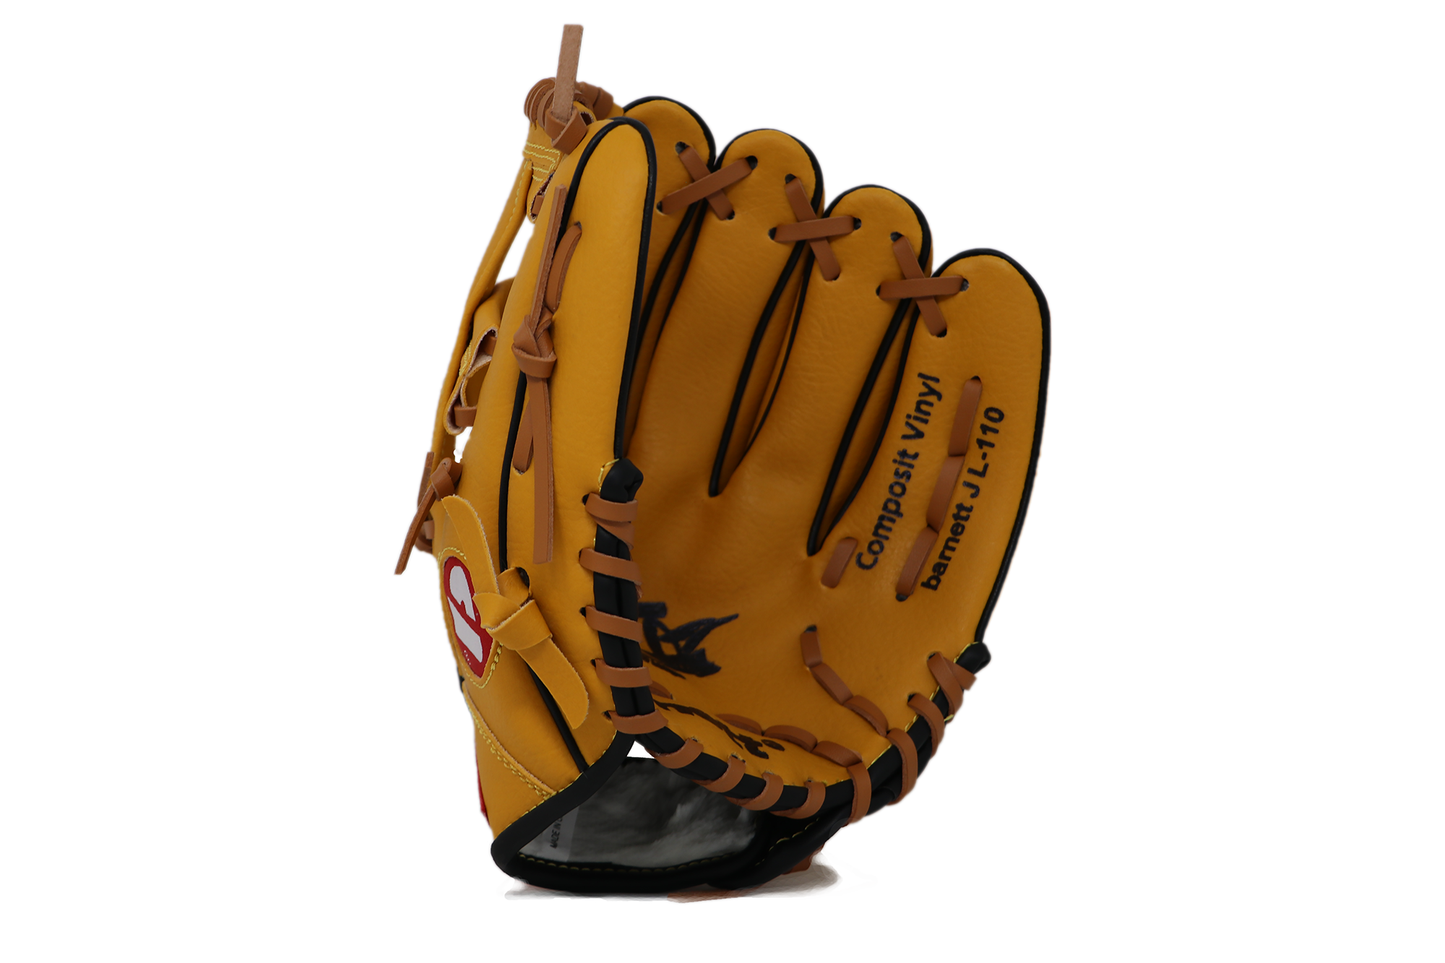 JL-110 - Baseballová rukavice, outfield, polyuretan, 11", hnědá